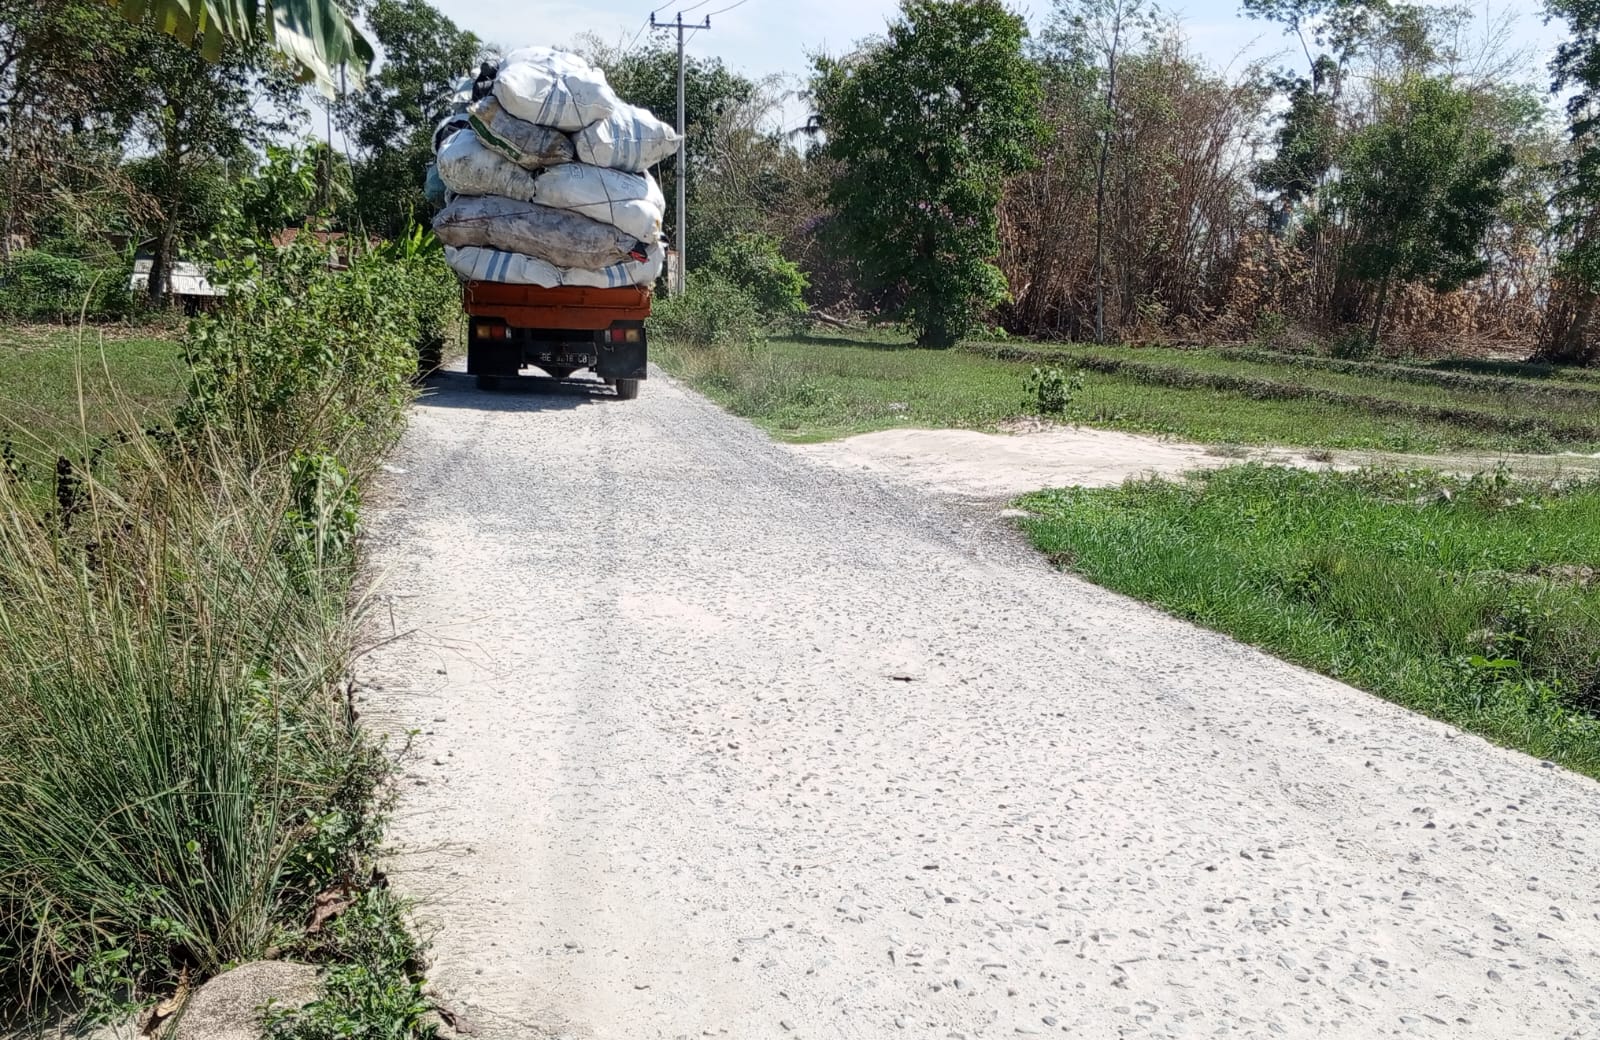 Lapor Pak Mentri Desa, Infrastruktur Jalan Dari Dana Desa di Branti Raya Dibangun Asal Jadi